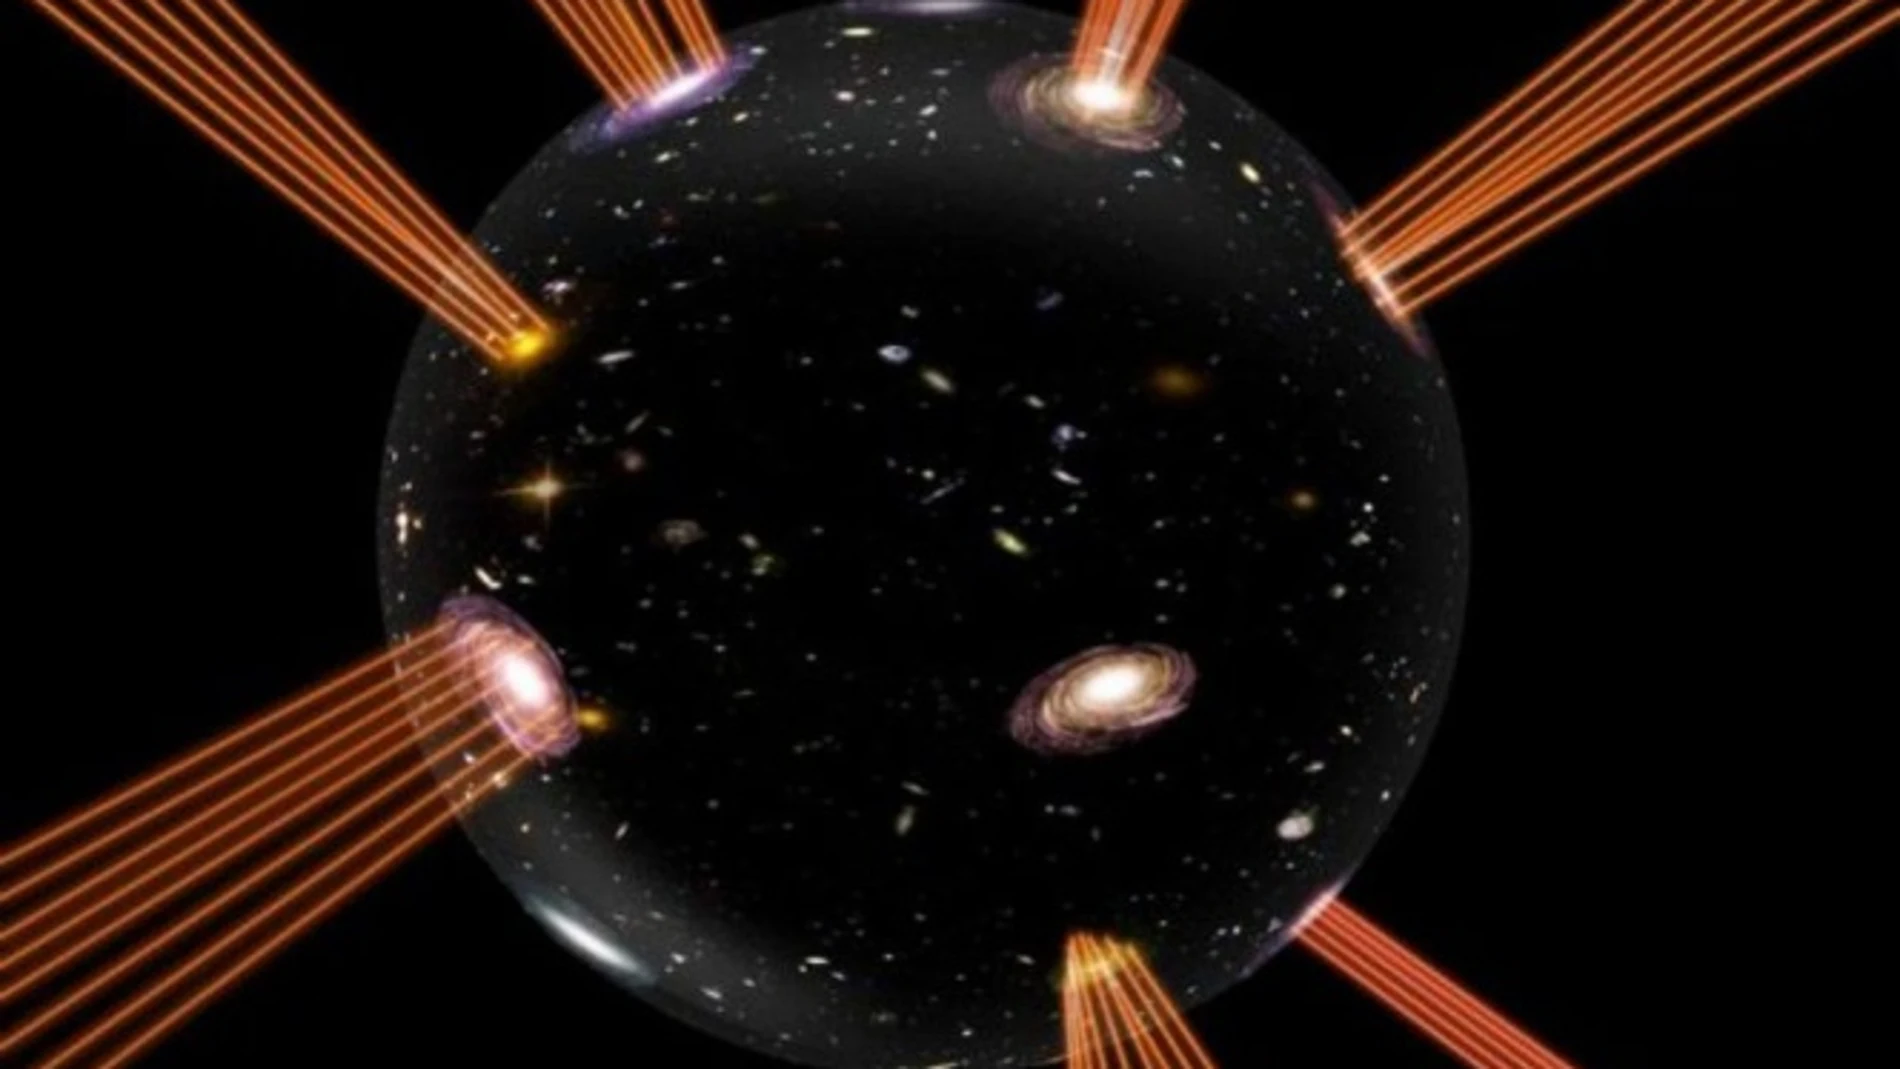 Representación gráfica de la burbuja cósmica sobre la que cabalgaría nuestro universo y que explicaría su expansión sin necesidad de energía oscura. Imagen: Suvendu Giri. Uppsala University.